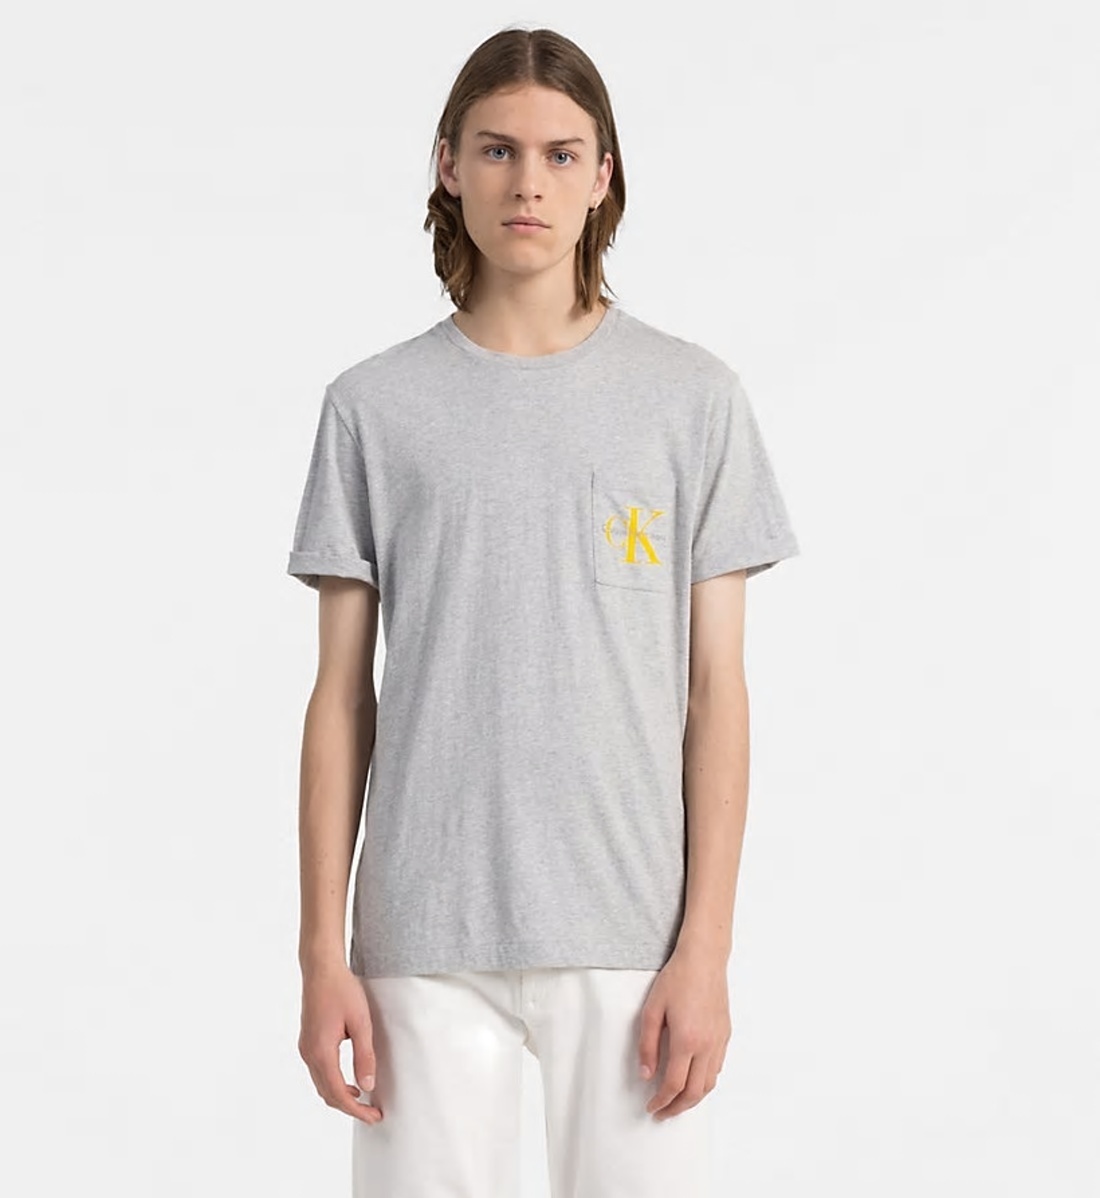 Calvin Klein pánské šedé tričko s kapsičkou - L (035)